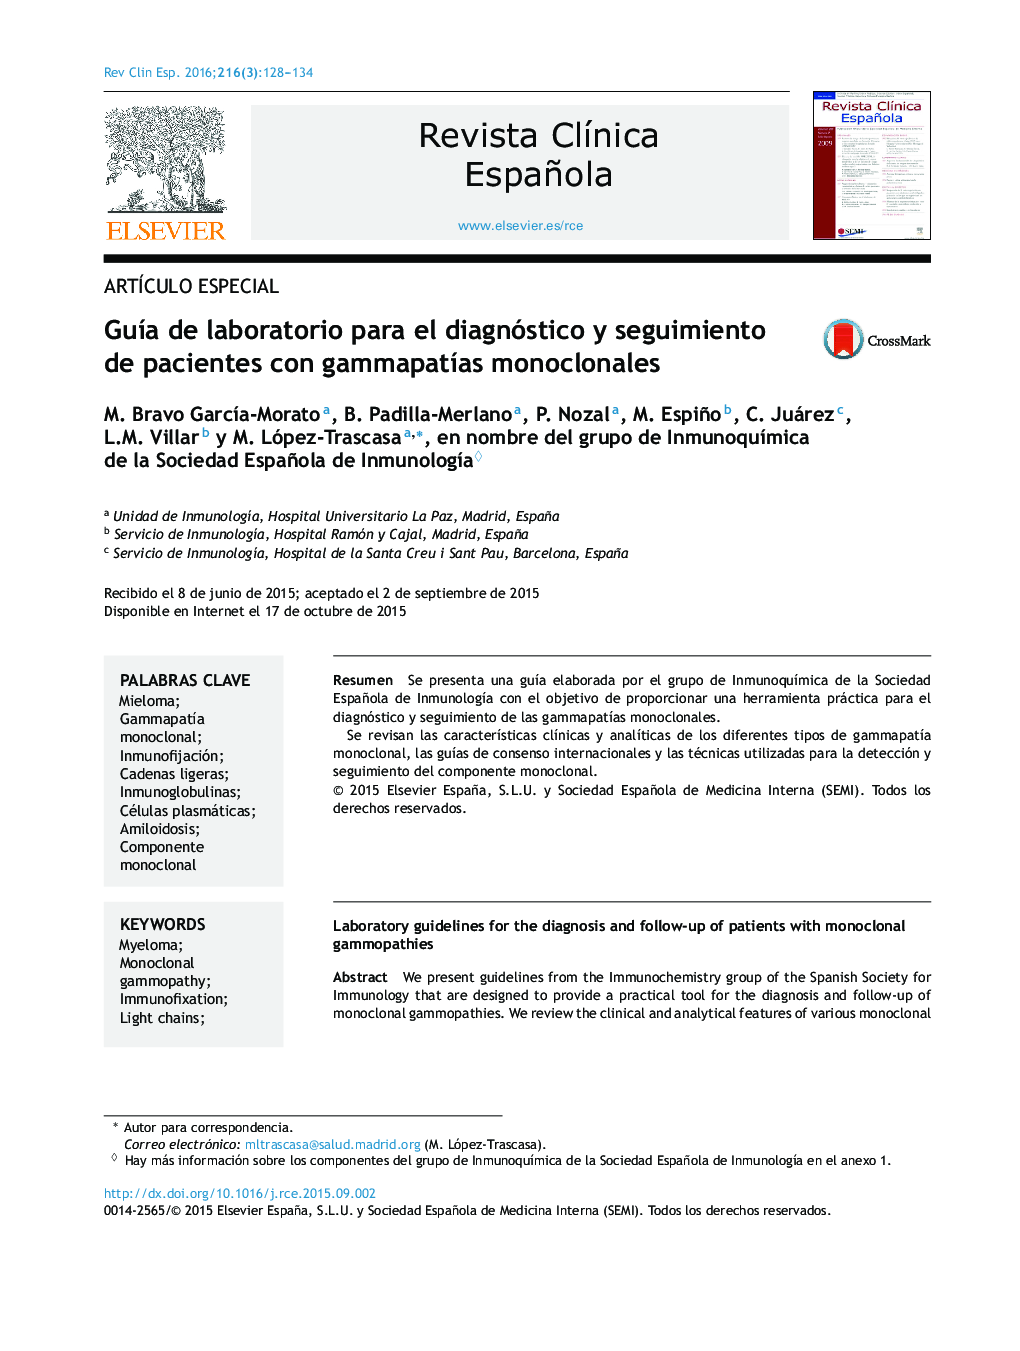 Guía de laboratorio para el diagnóstico y seguimiento de pacientes con gammapatías monoclonales